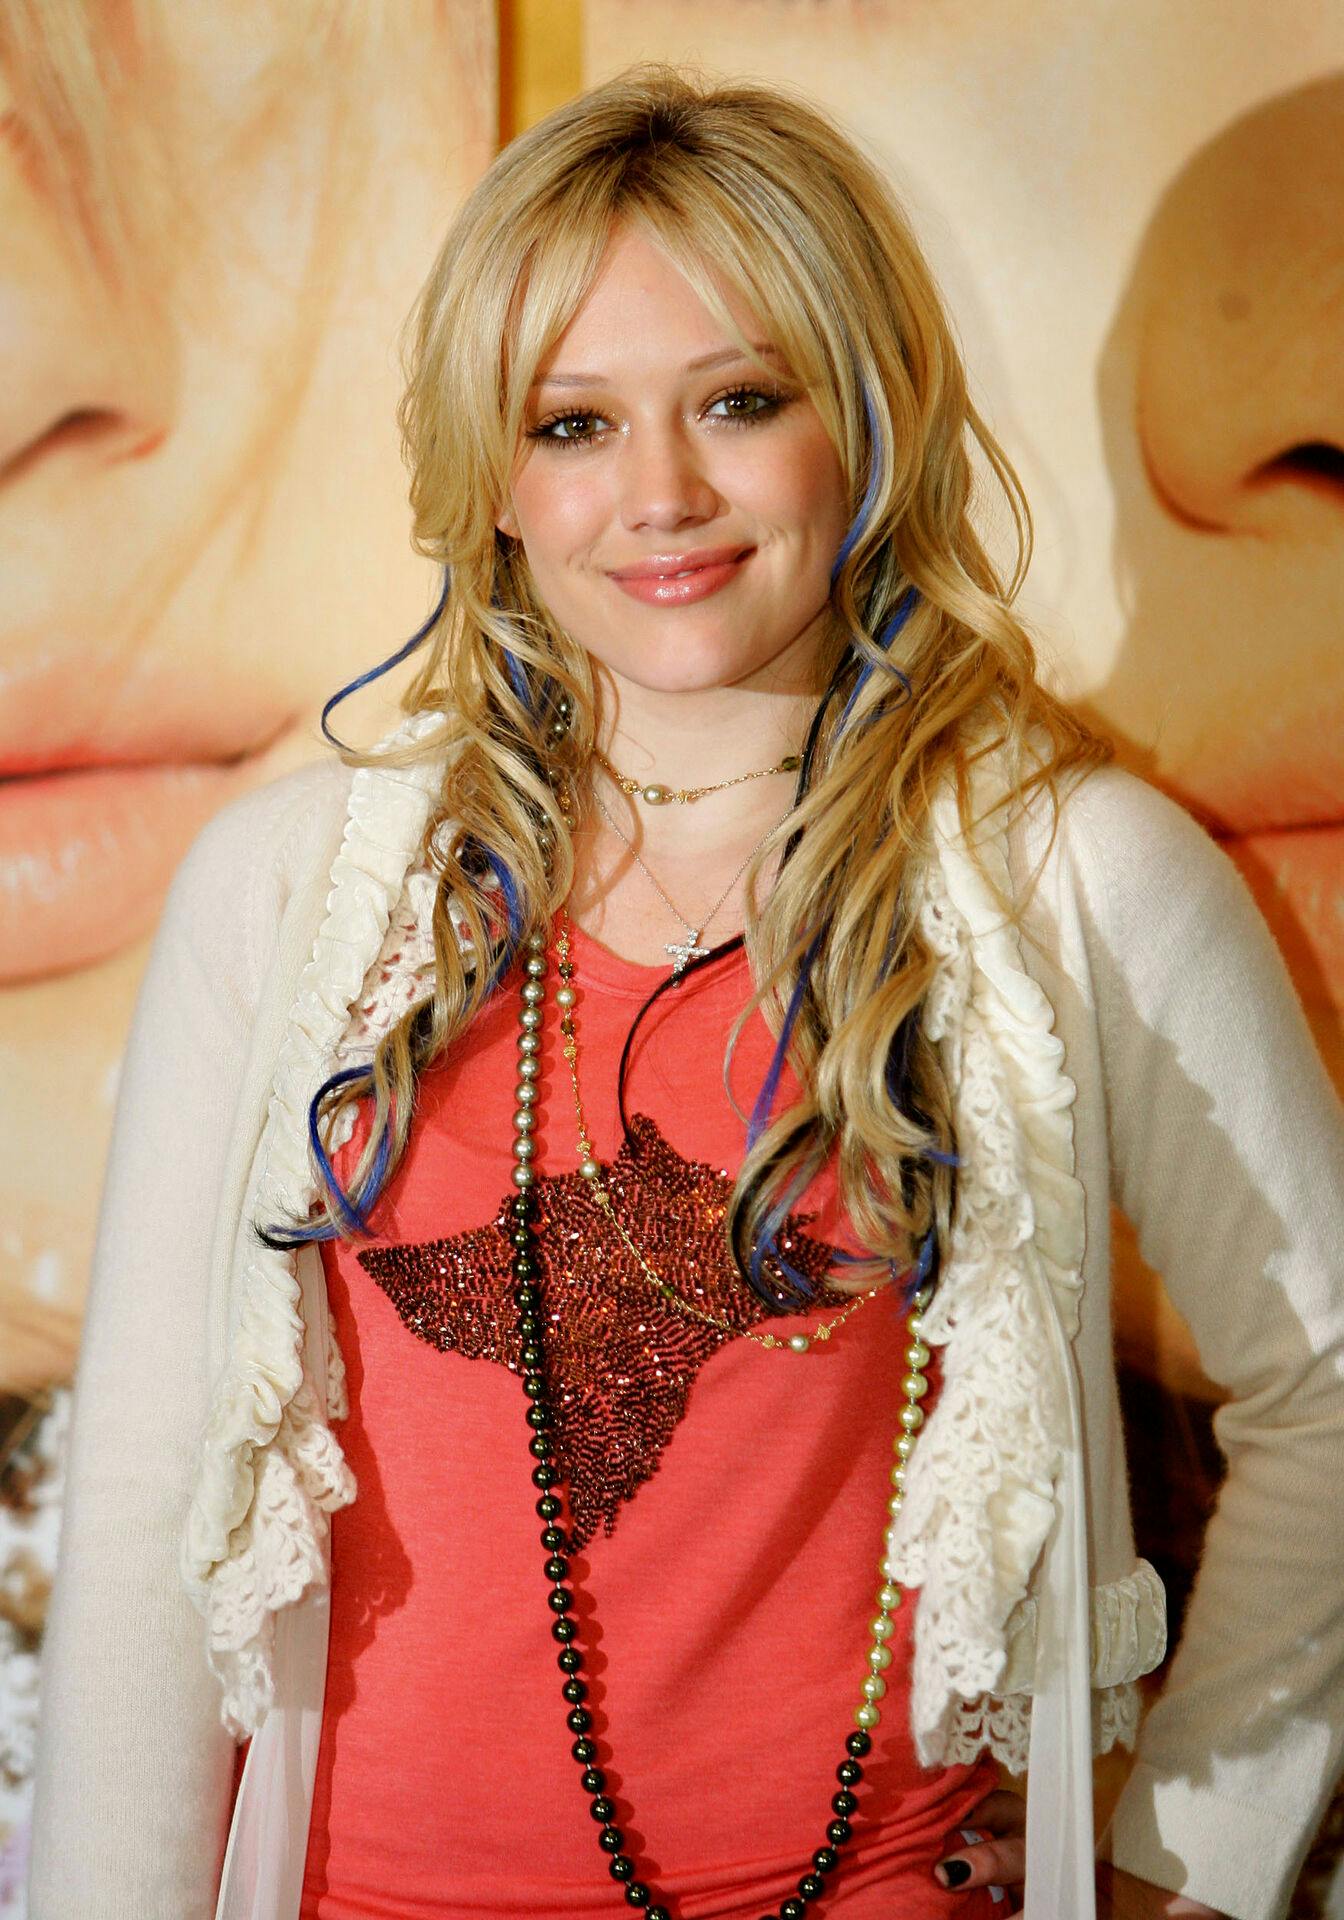 Hilary Duff var blot 13 år, da hun sikrede sig hovedrollen i den populære børneserie "Lizzie McGuire".